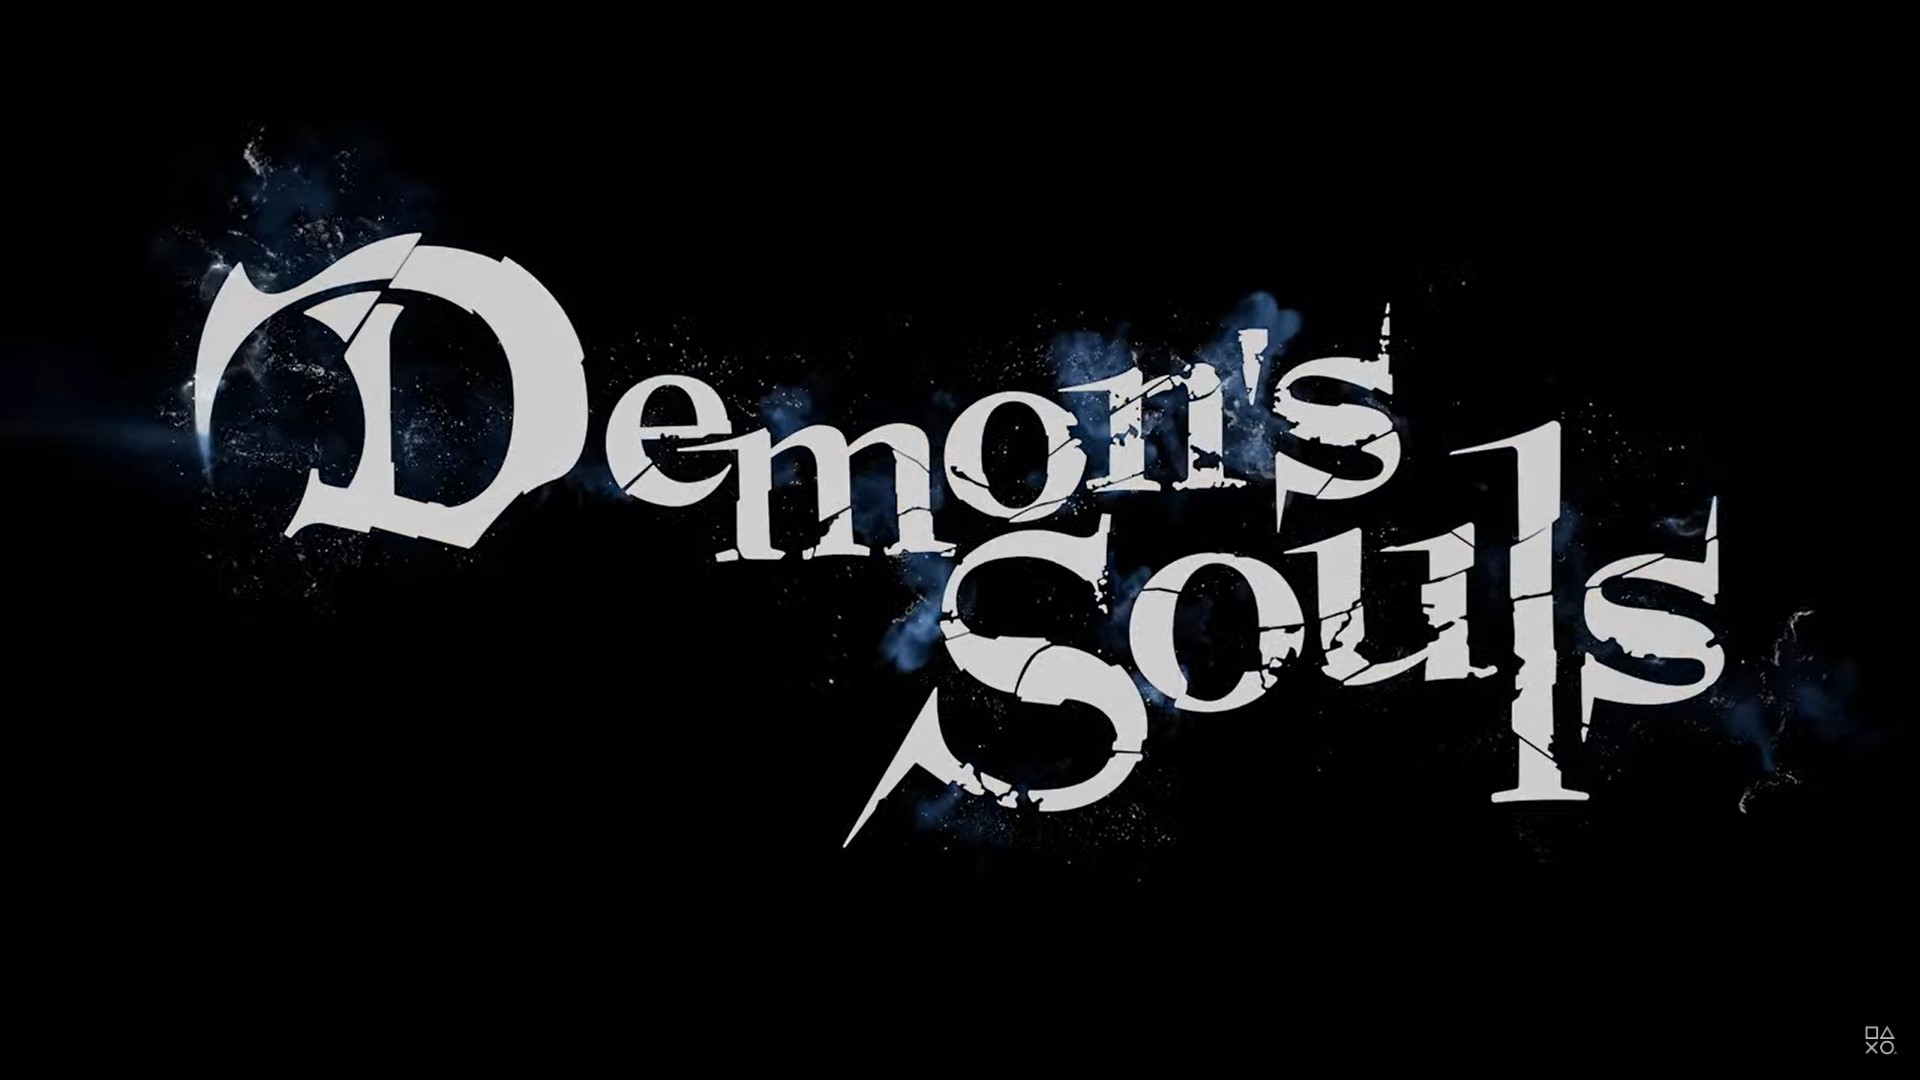 How to get Penetrator’s Trophy in Demon's Souls?